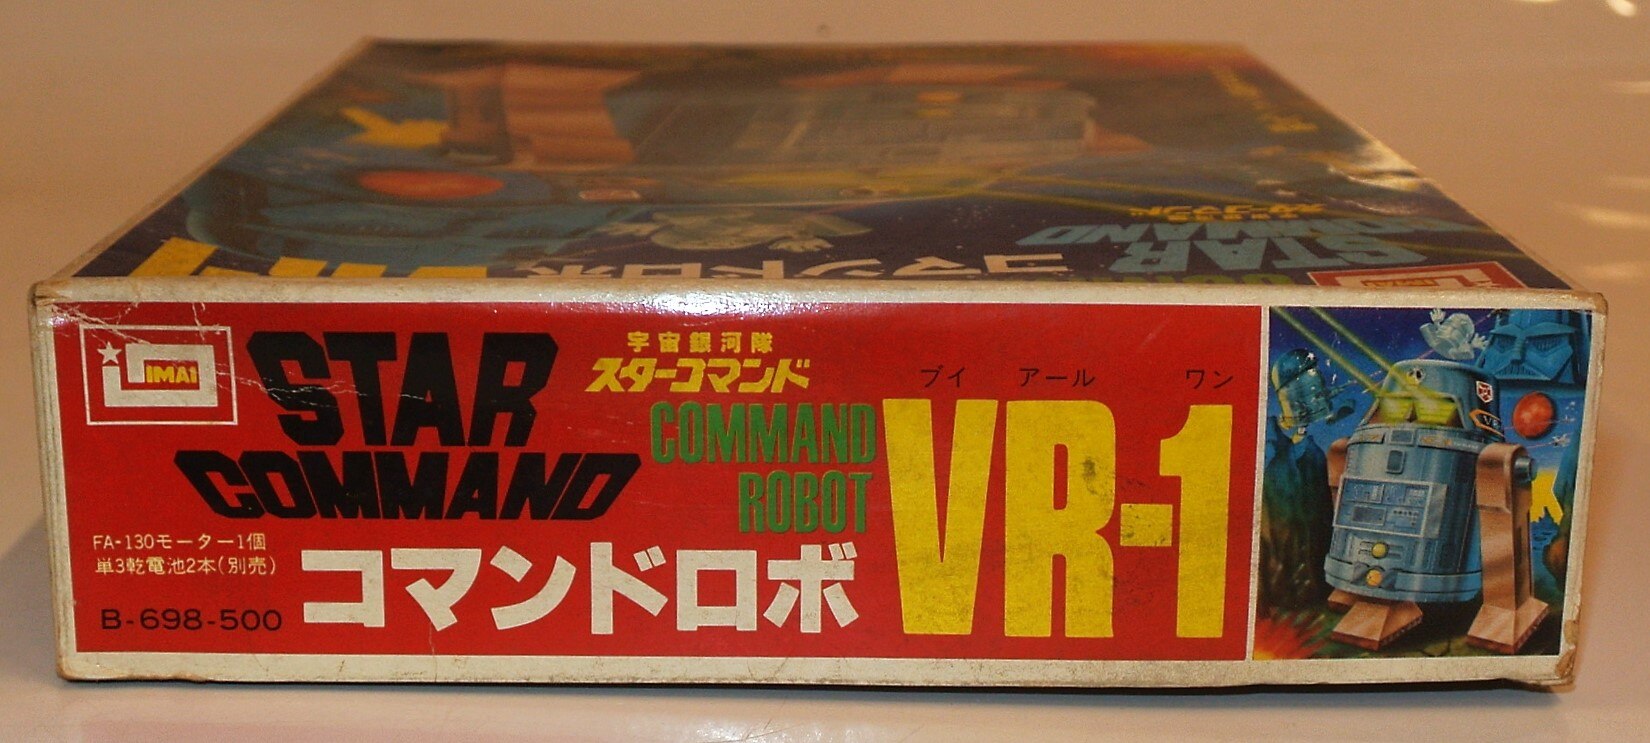 今井科学株式会社 コマンドロボ VR-1 - おもちゃ